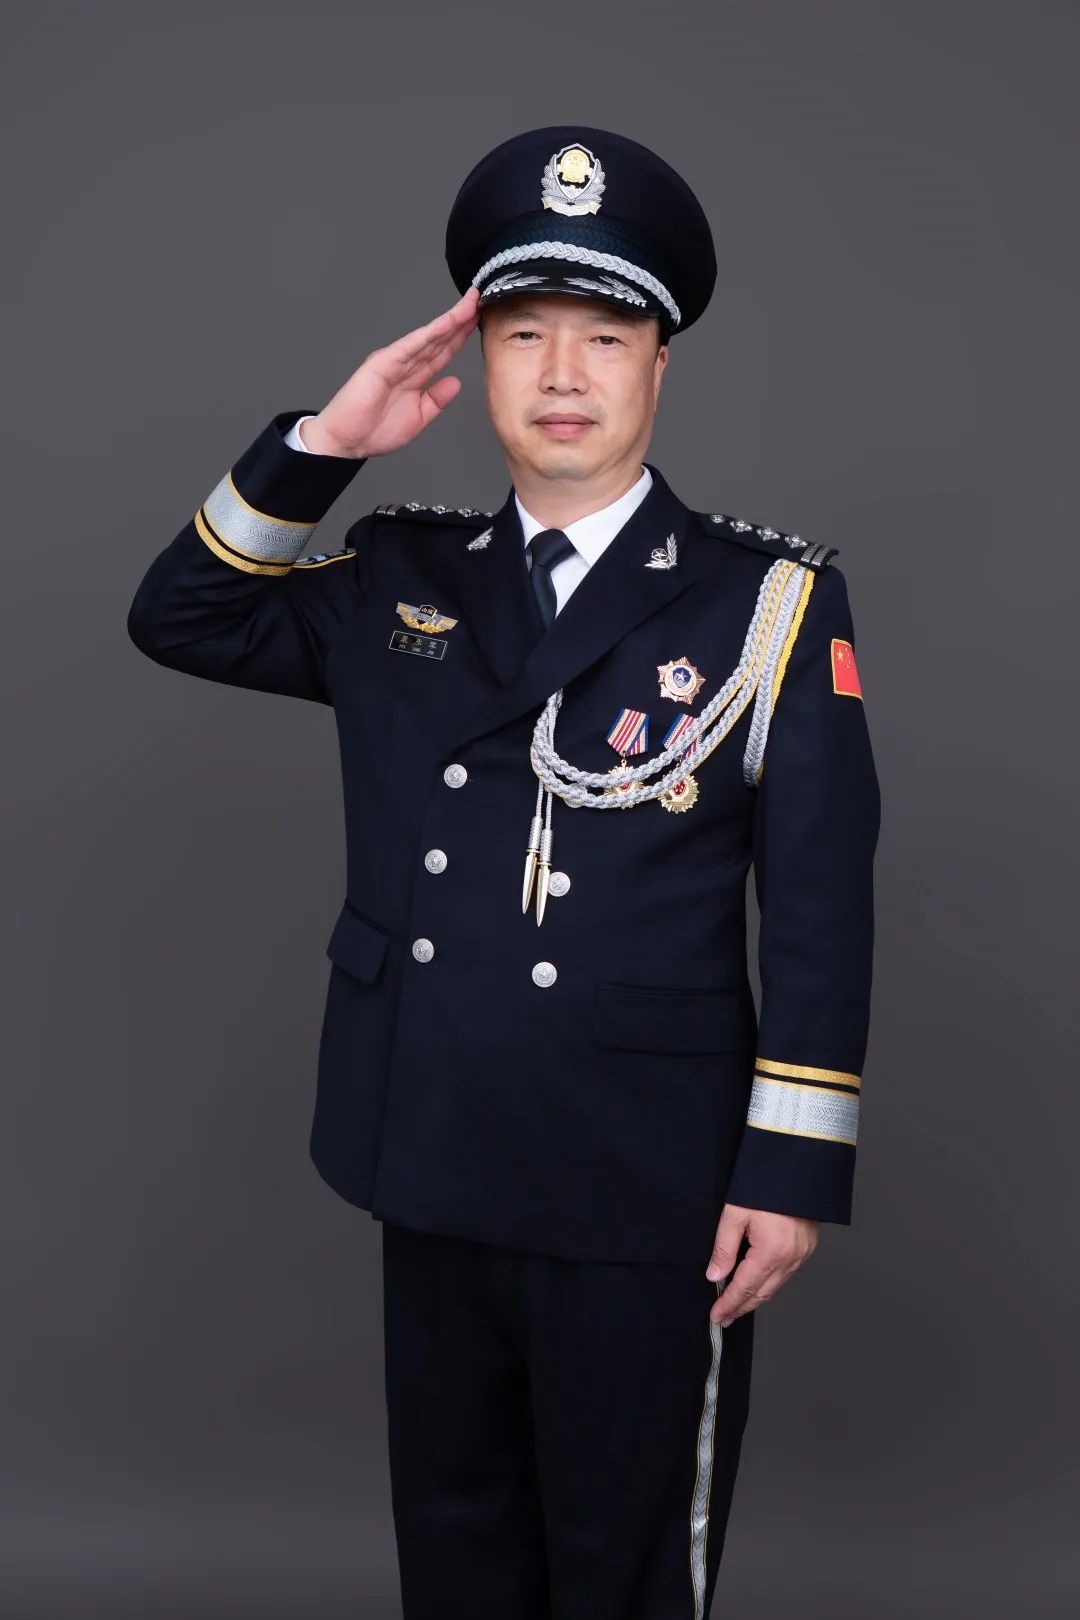 1972年10月出生,汉族,大学文化程度,中共党员,二级警长,一级警督警衔